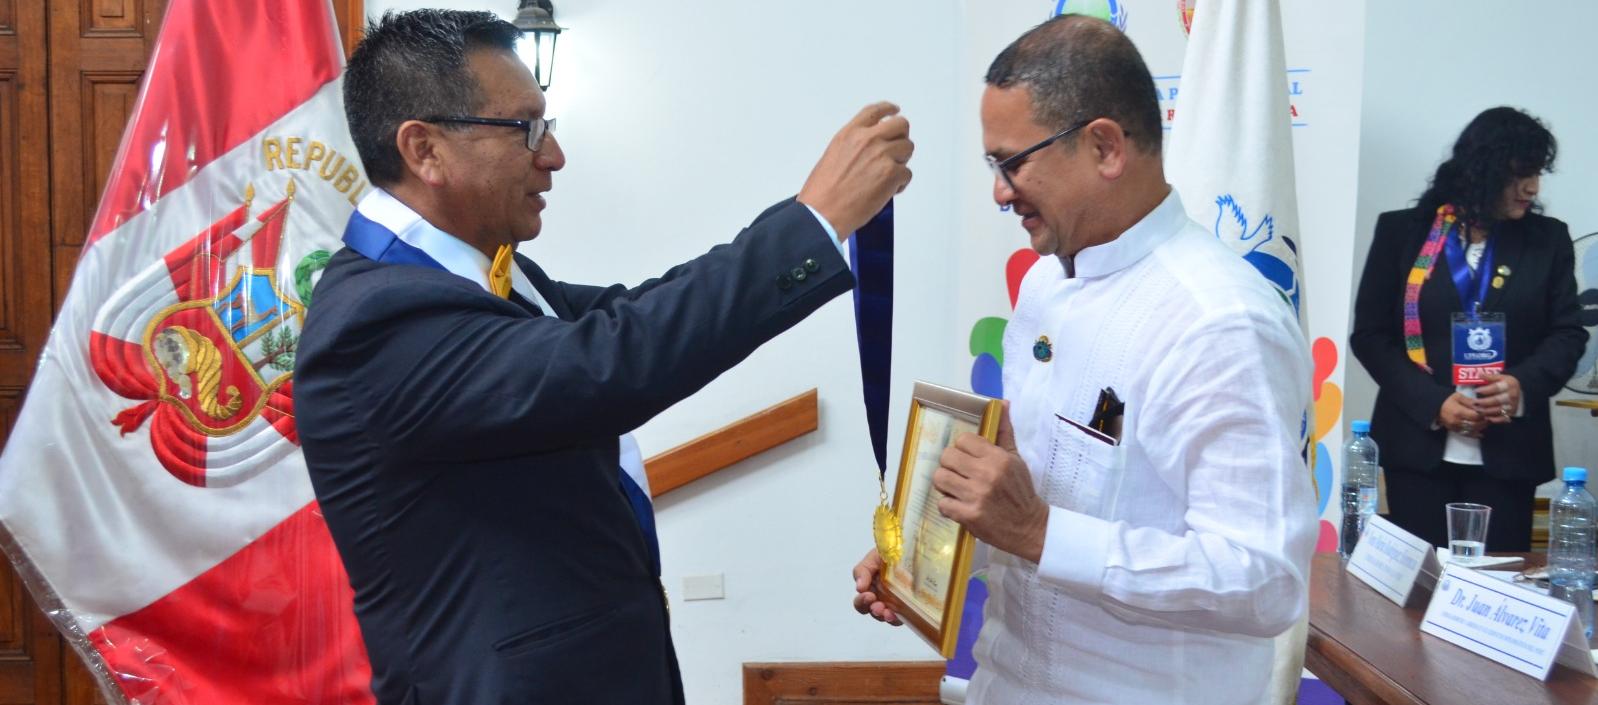 Jaime Fernández, secretario general de la Federación para la Paz Universal, le impone a Fausto Pérez la medalla.